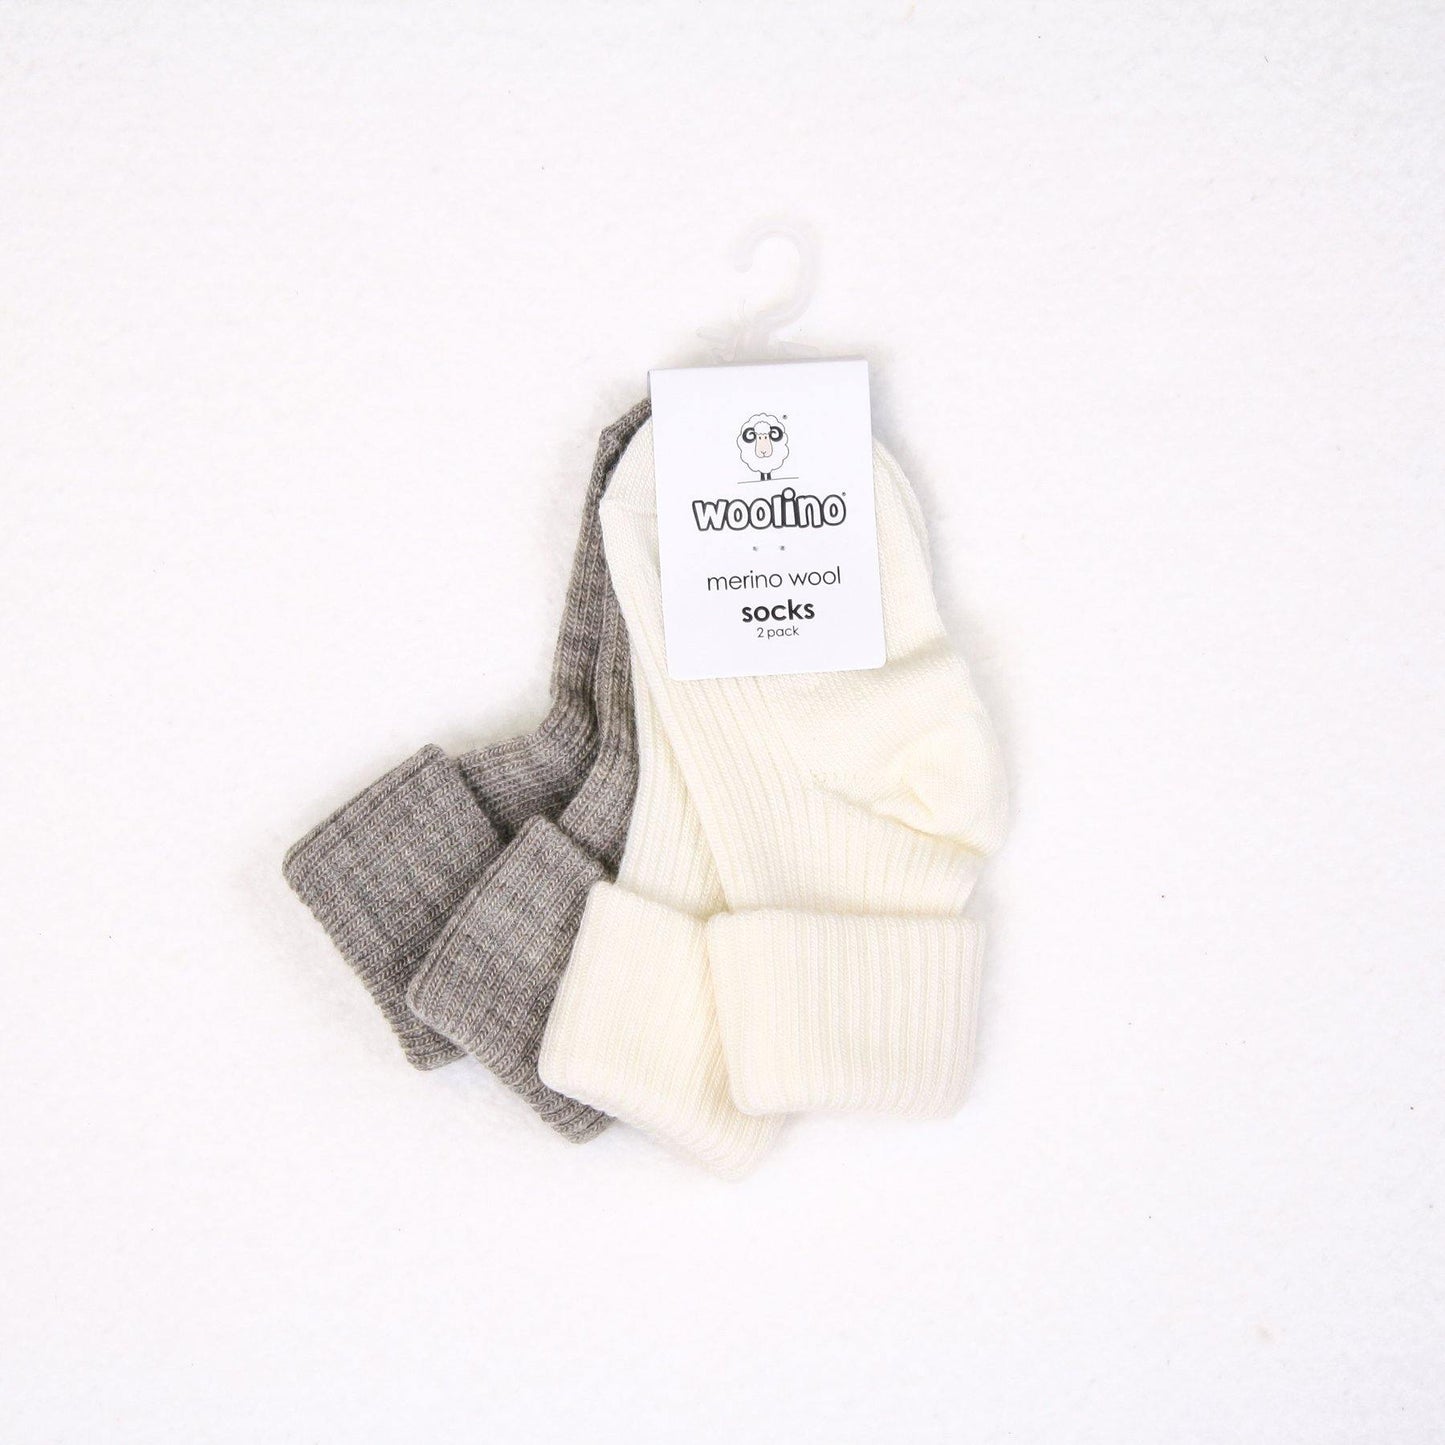 Woolino Baby Wool Socks - 2 Pairs - Gray/White